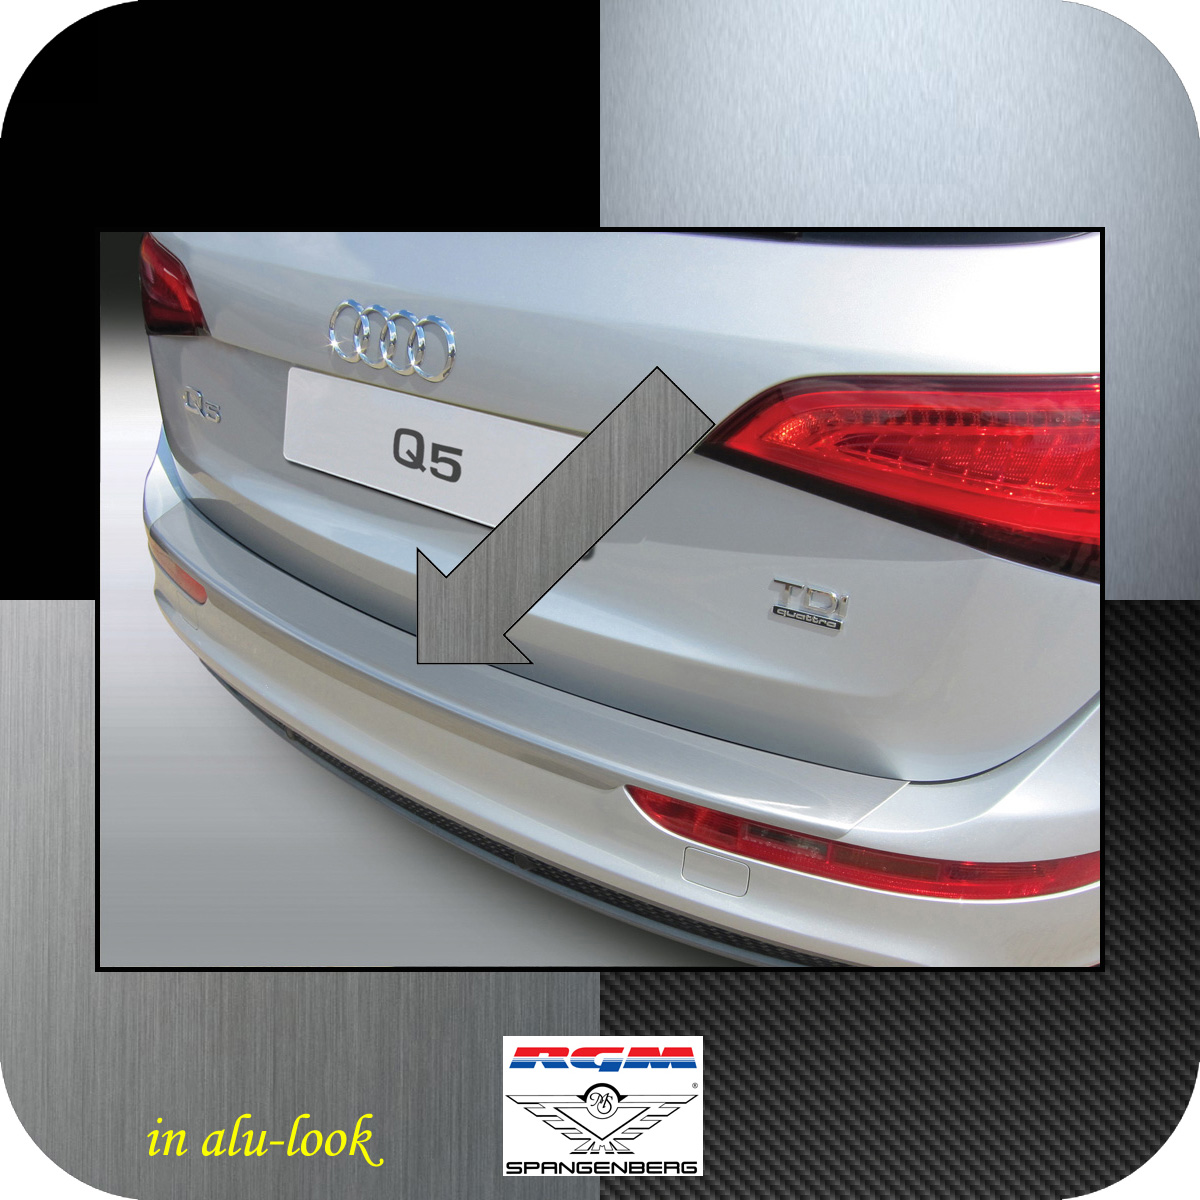 Ladekantenschutz Alu-Look Audi Q5 SUV Kombi auch SQ5 Baujahre 2008-16 3504475